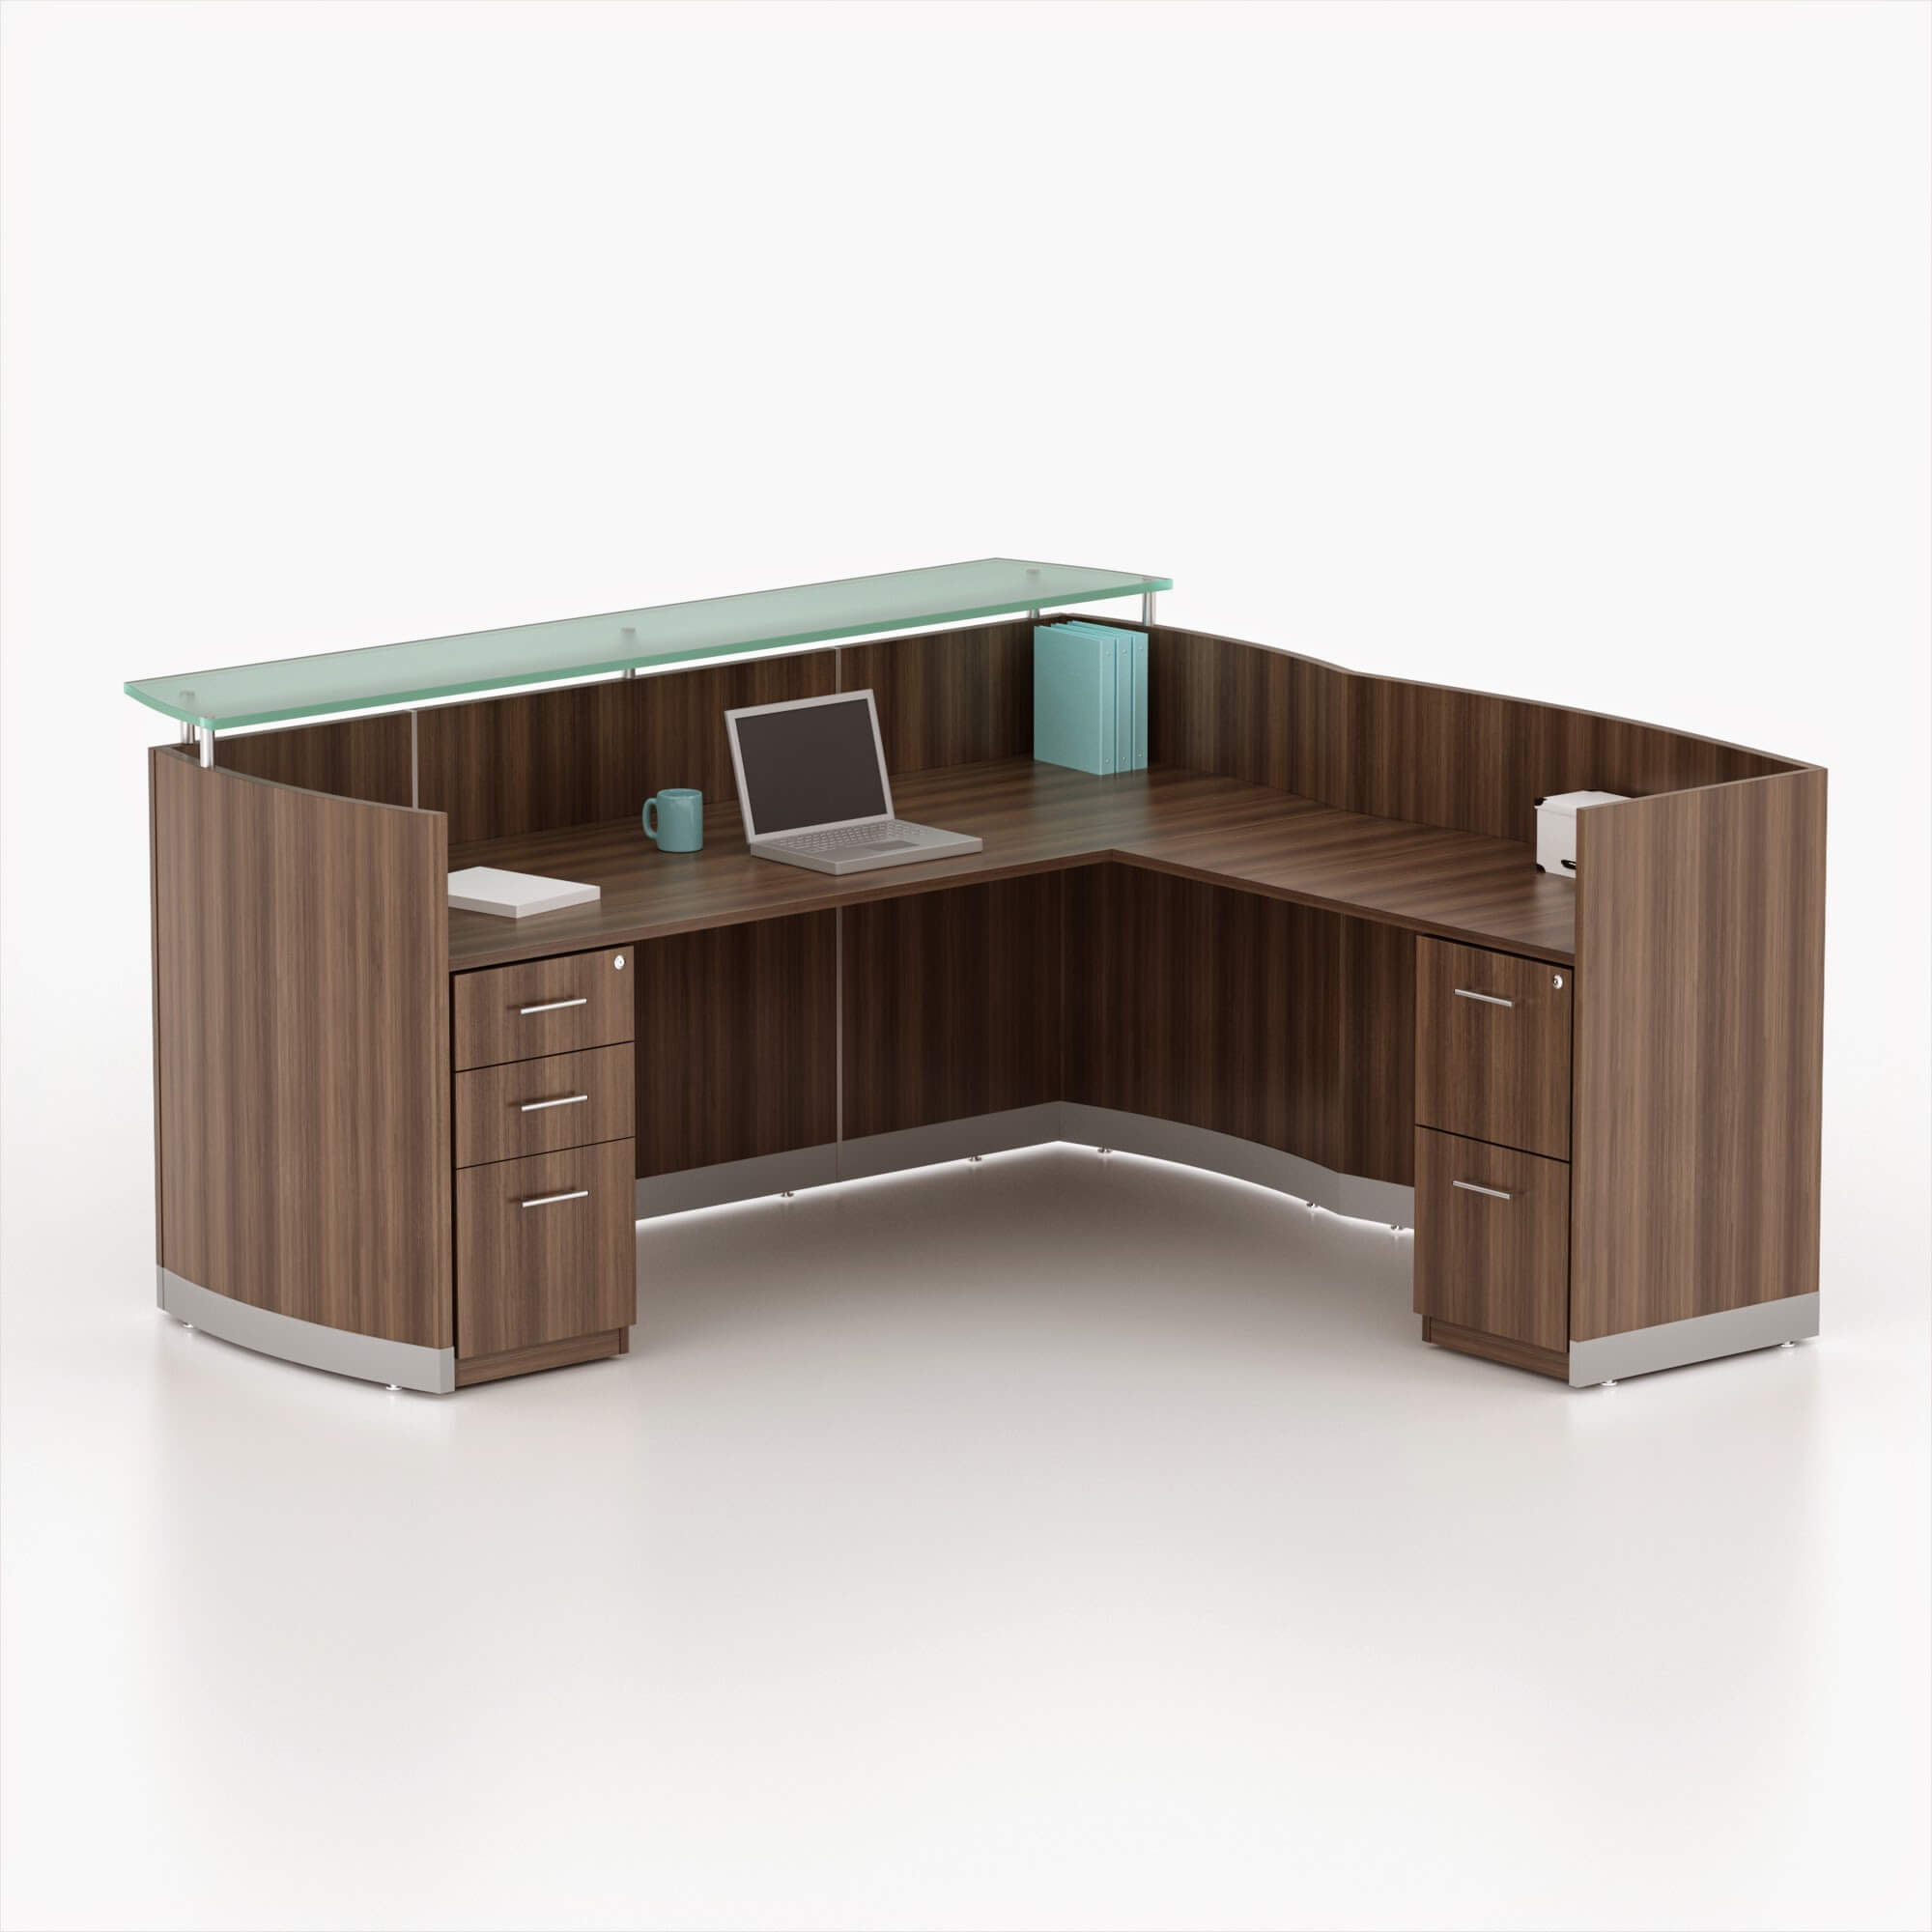 L shaped reeption desk CUB MNRSLBB BRS MAY